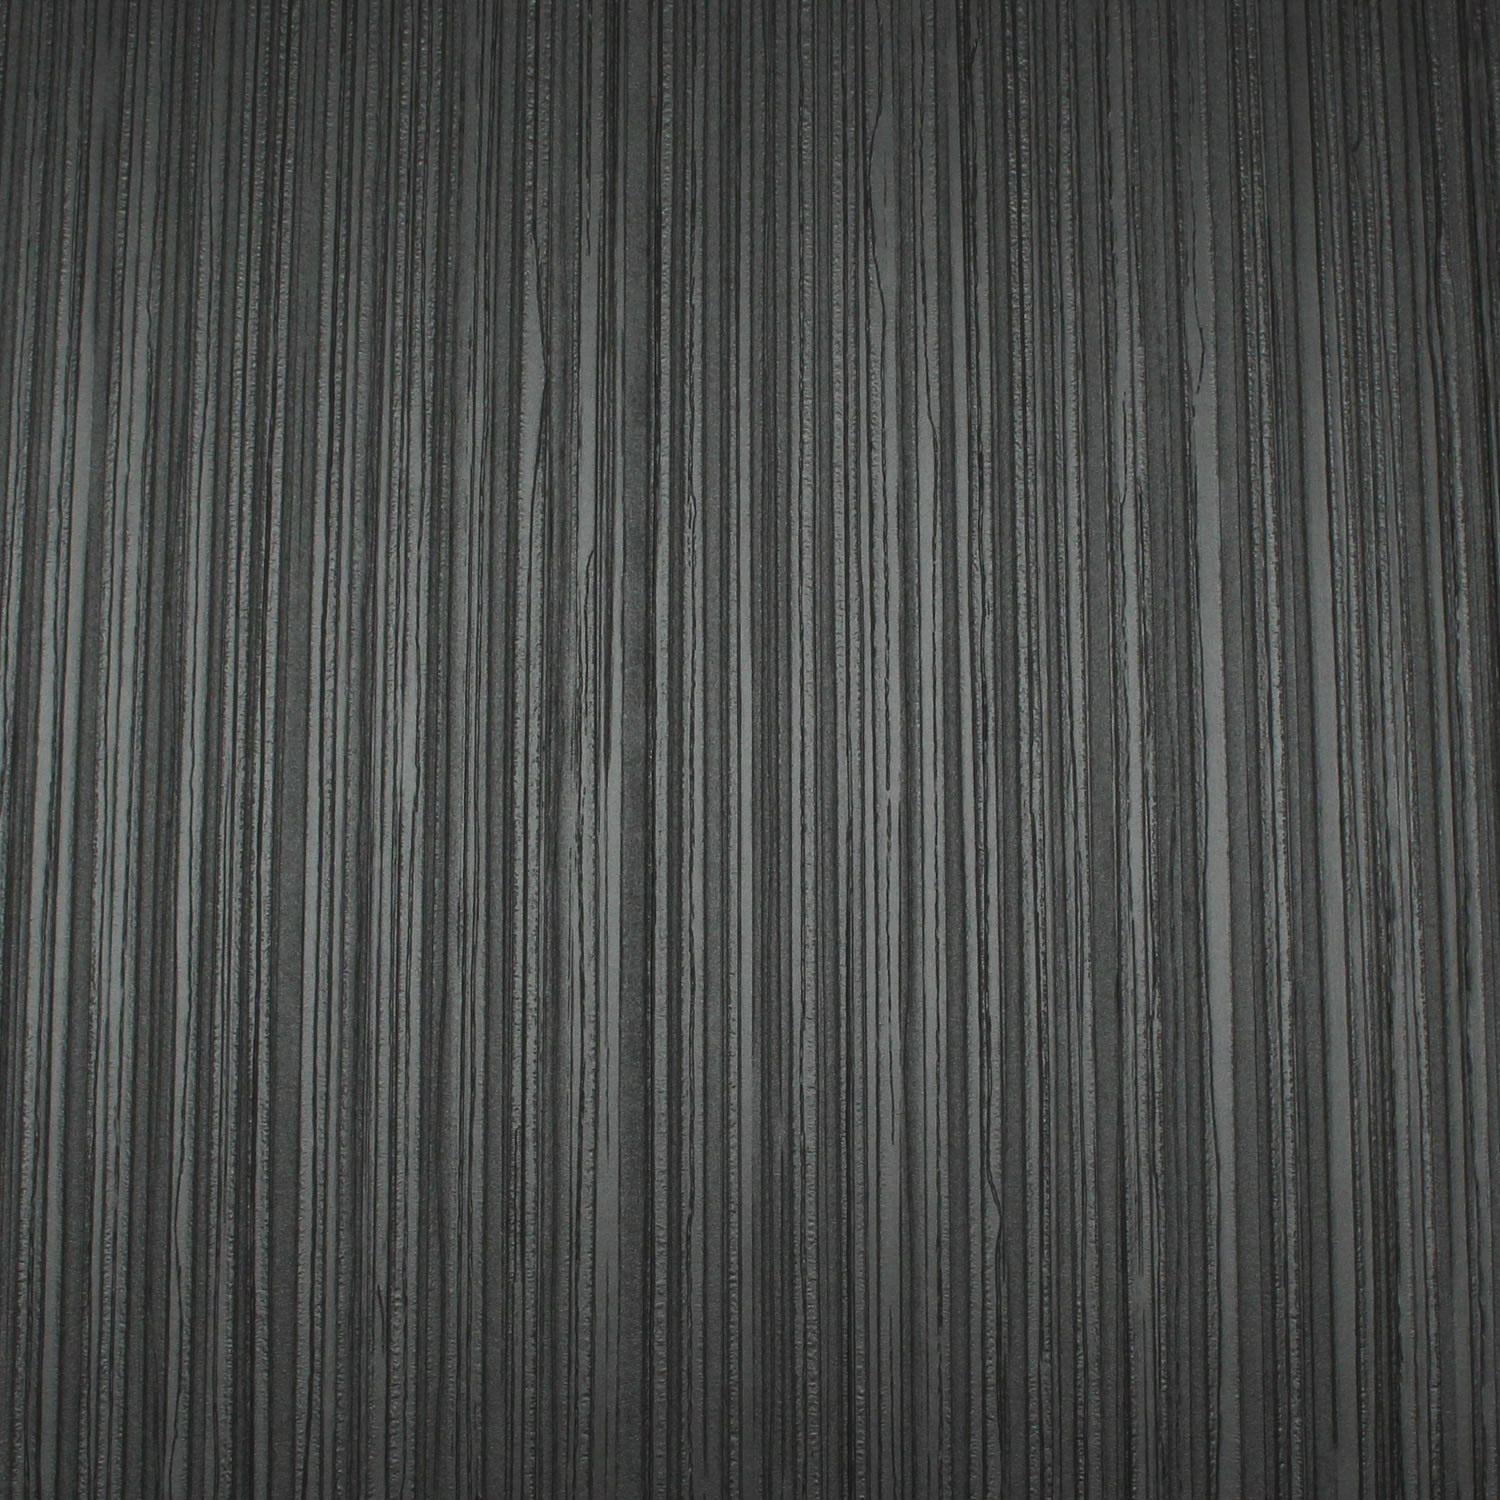 Carlucci Di Chivasso Whisper Wallpaper In Charcoal 10m Roll Next